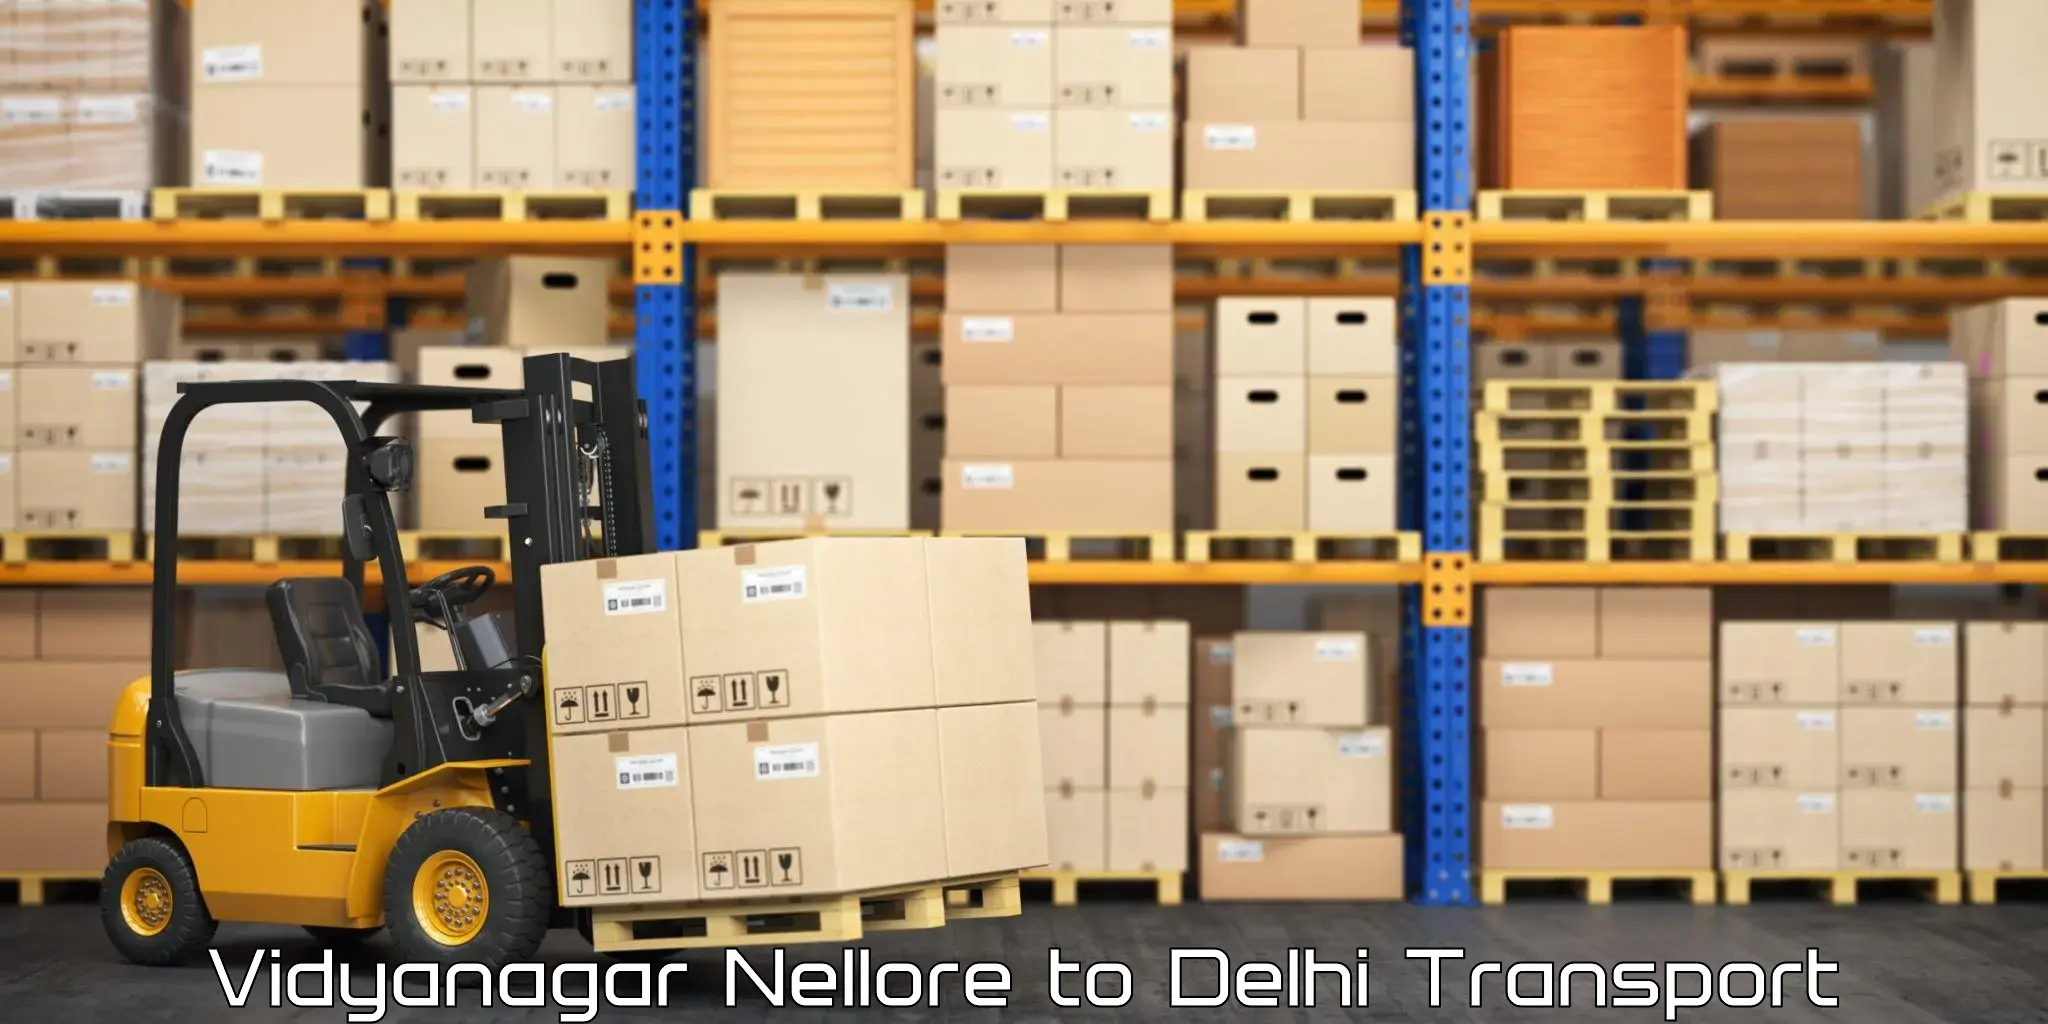 Cargo transportation services Vidyanagar Nellore to Jamia Millia Islamia New Delhi